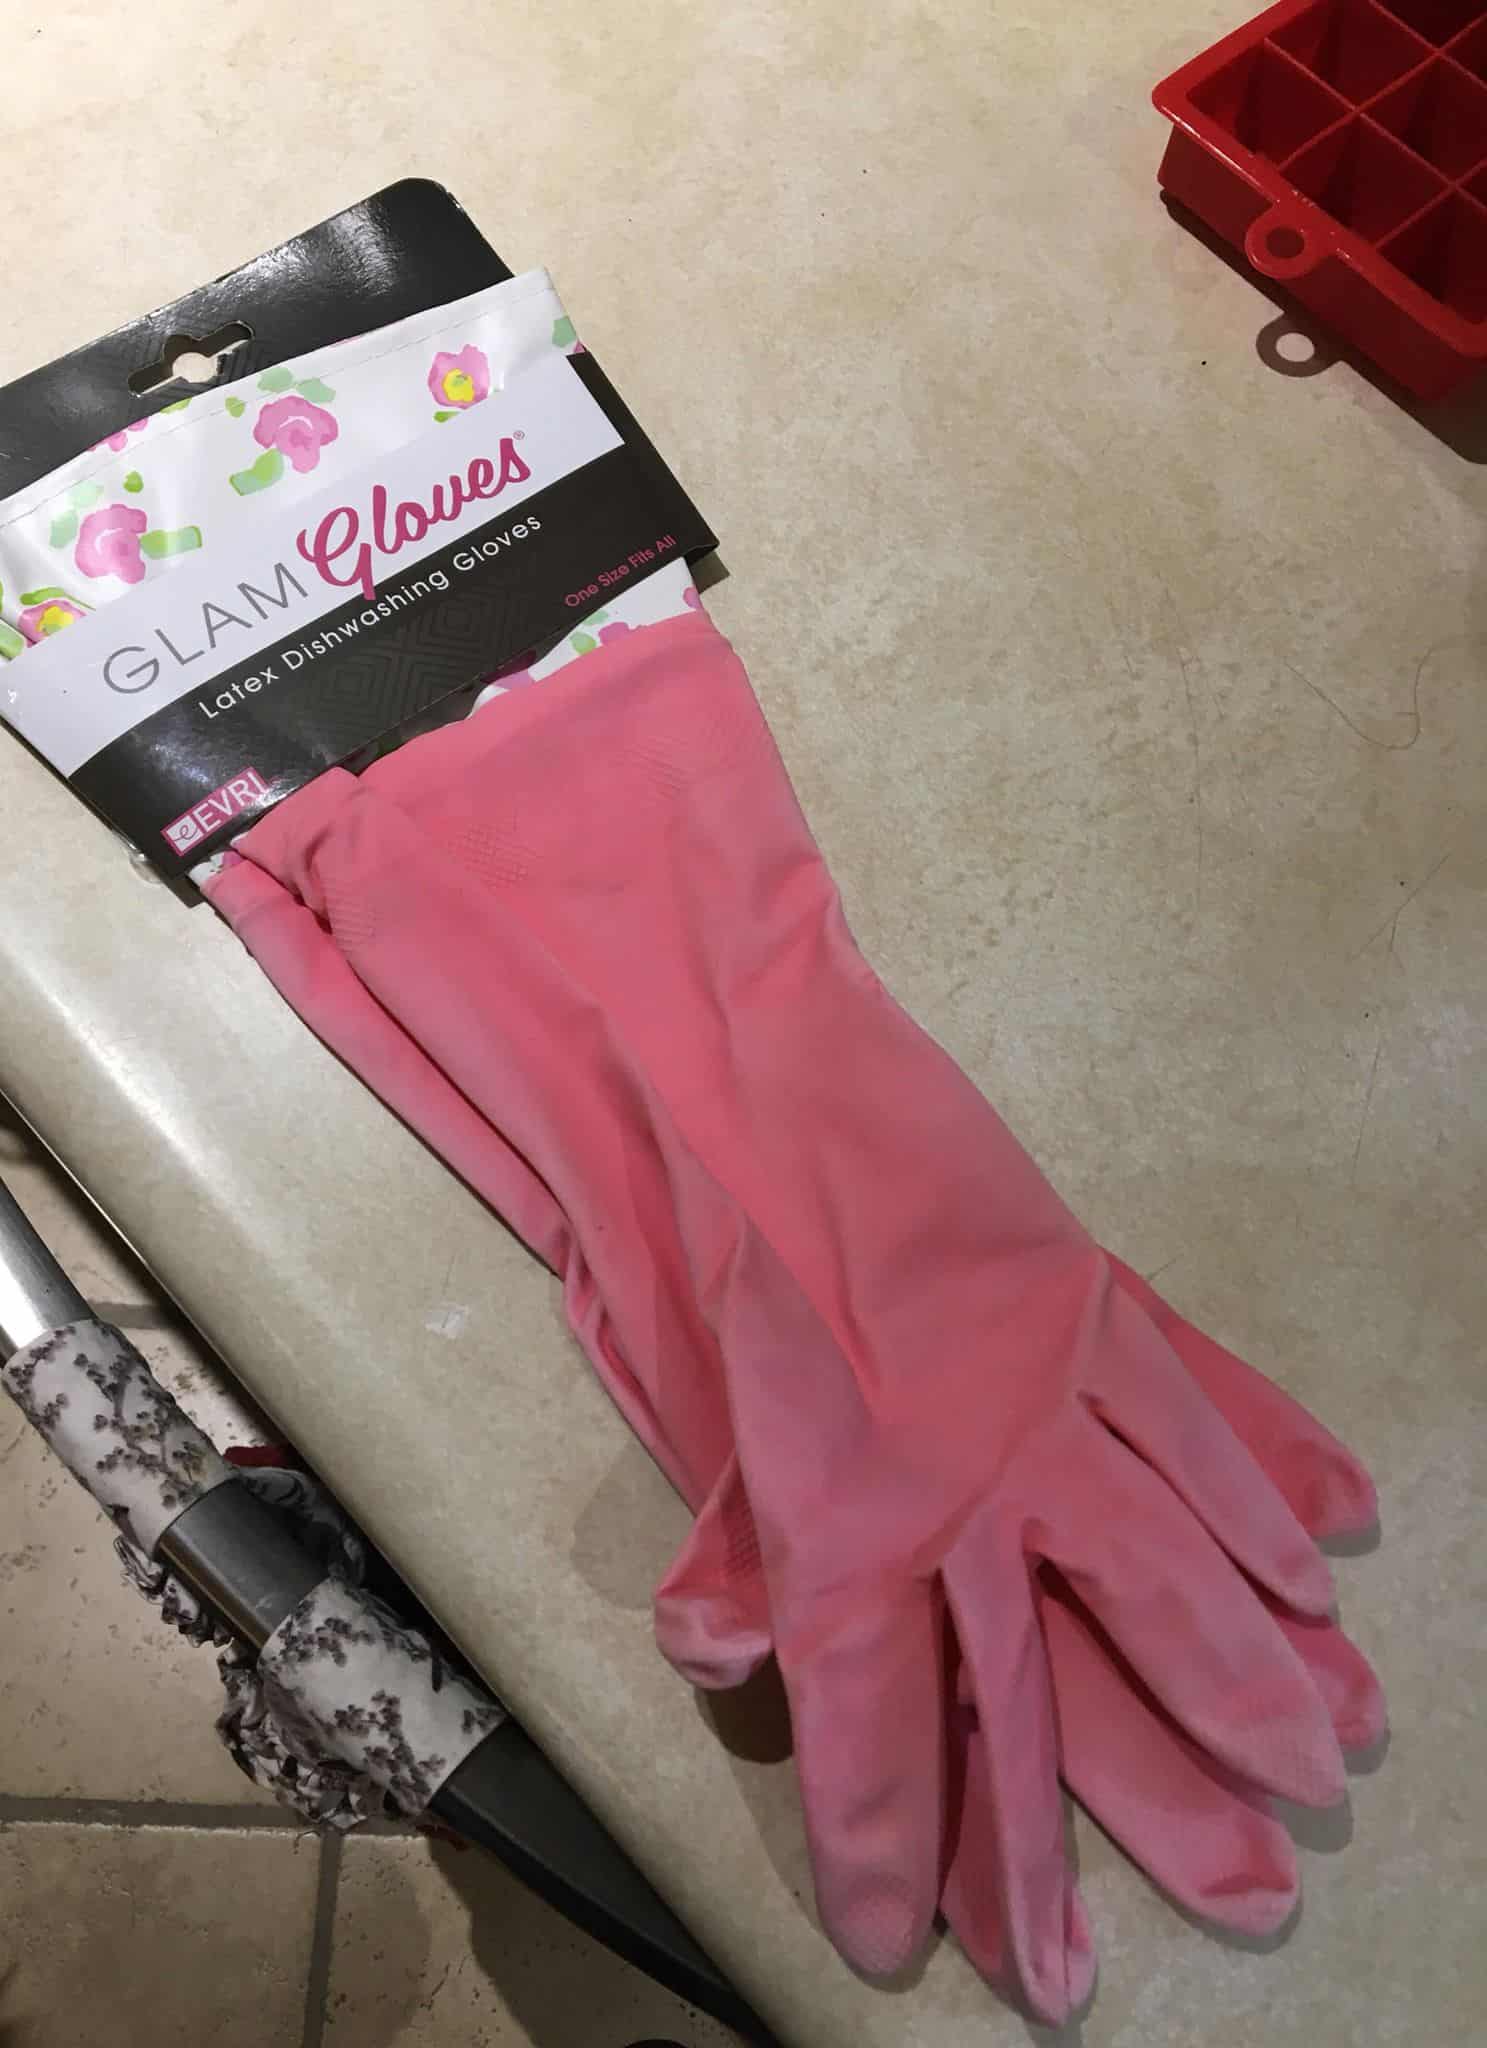 Pink kitchen gloves.